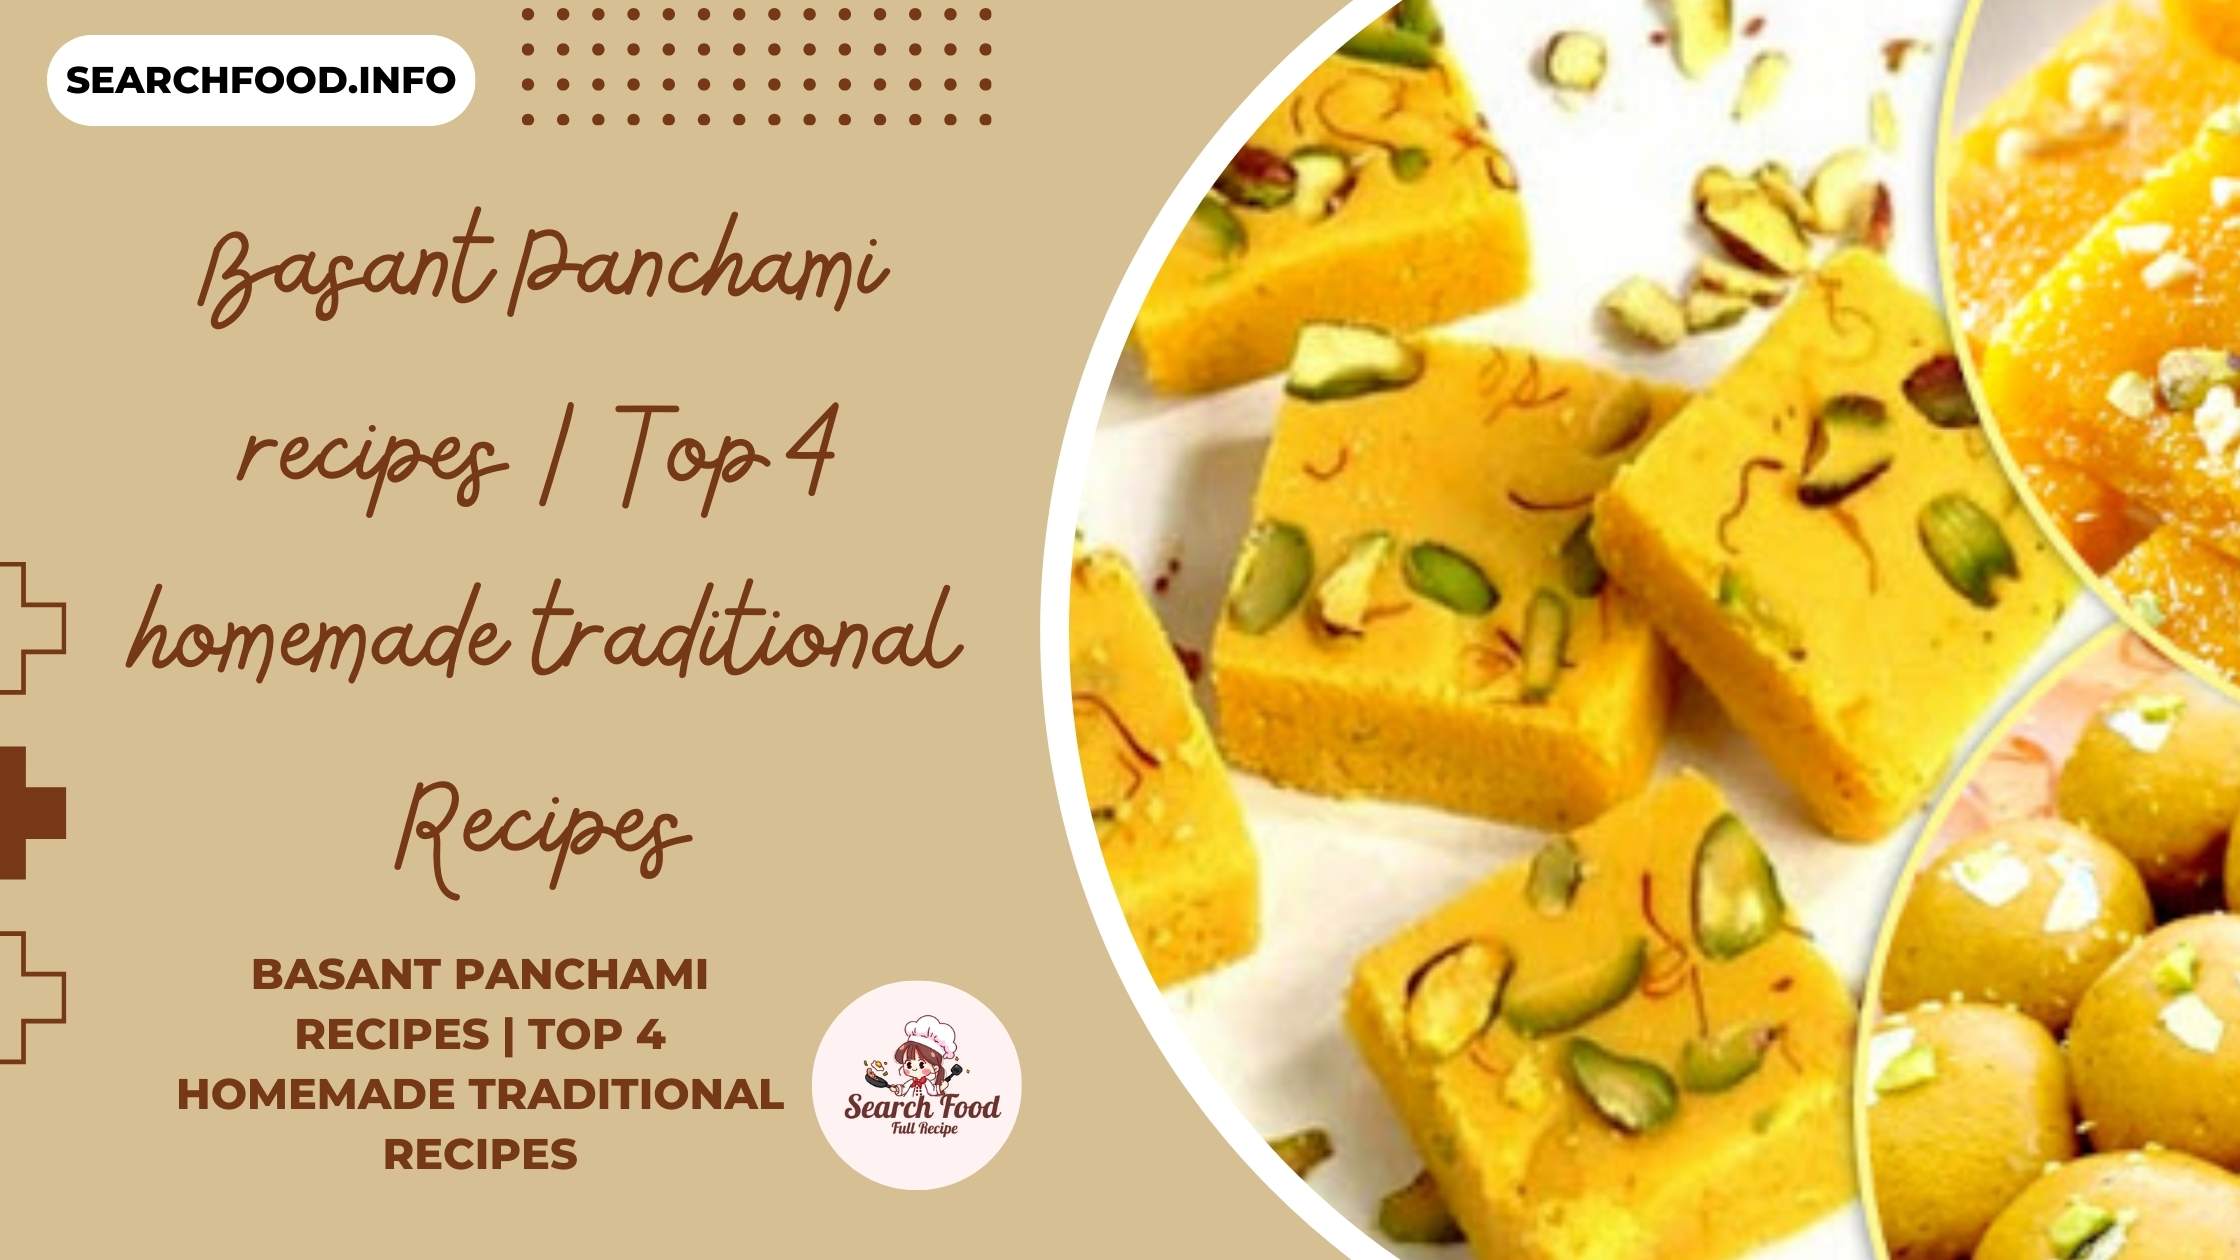 Basant Panchami recipes | Top 4 homemade traditional Recipes